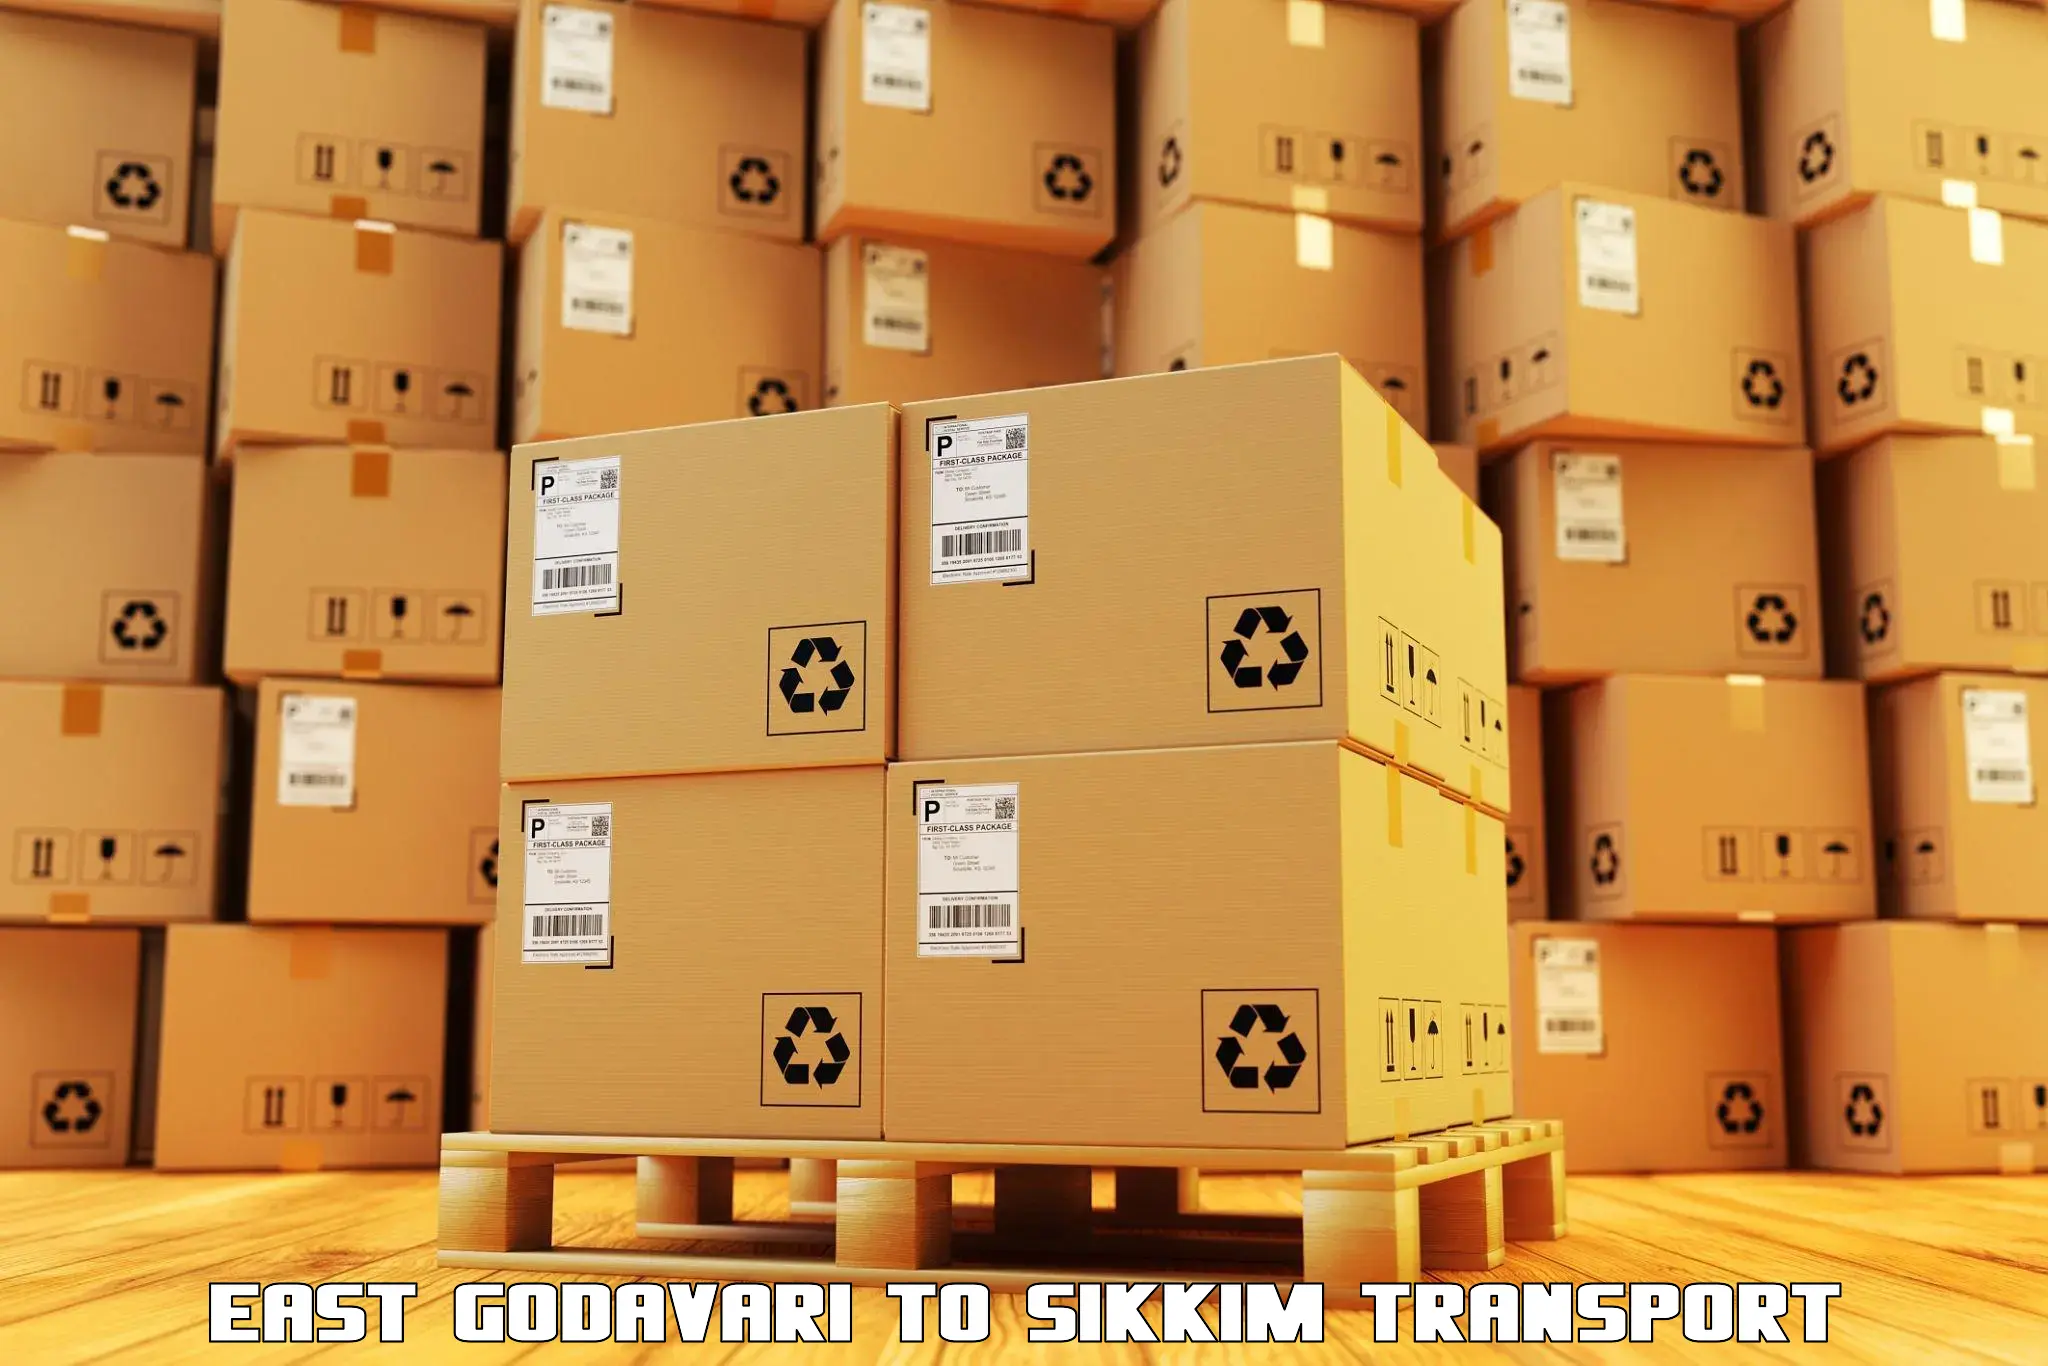 Shipping partner East Godavari to Gangtok